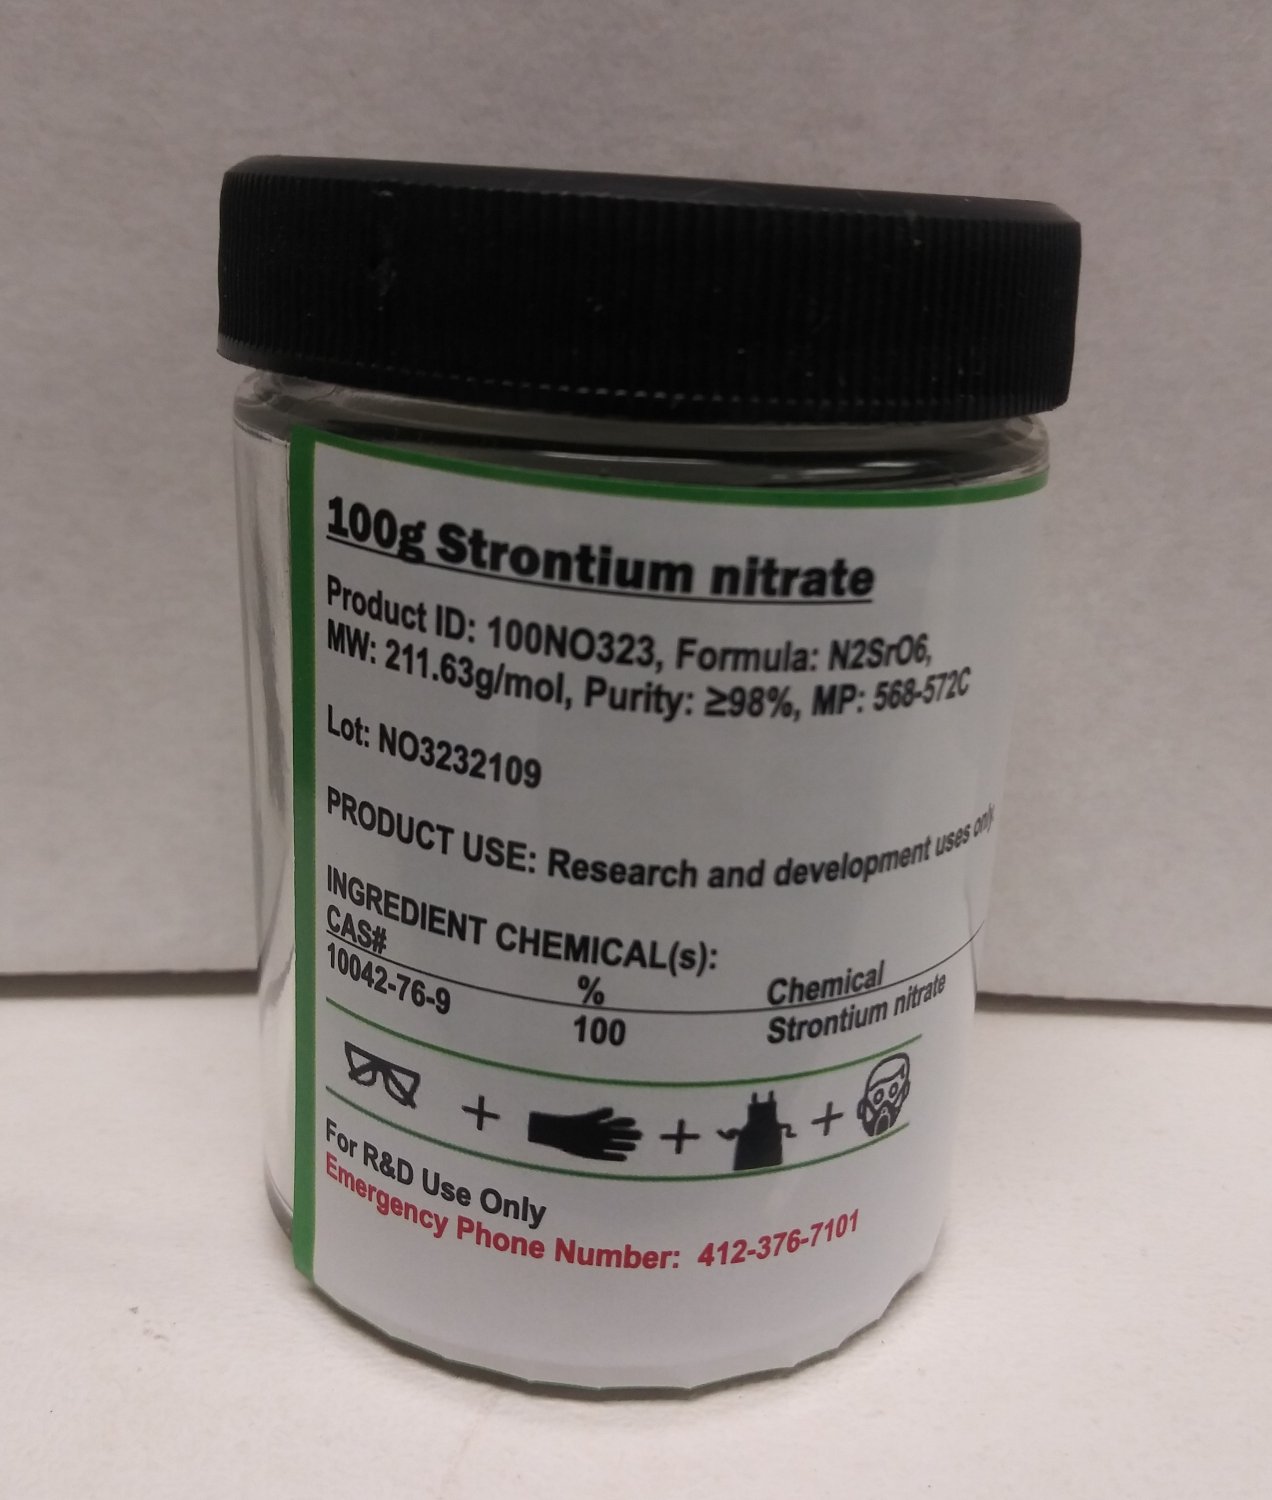 1kg Strontium nitrate